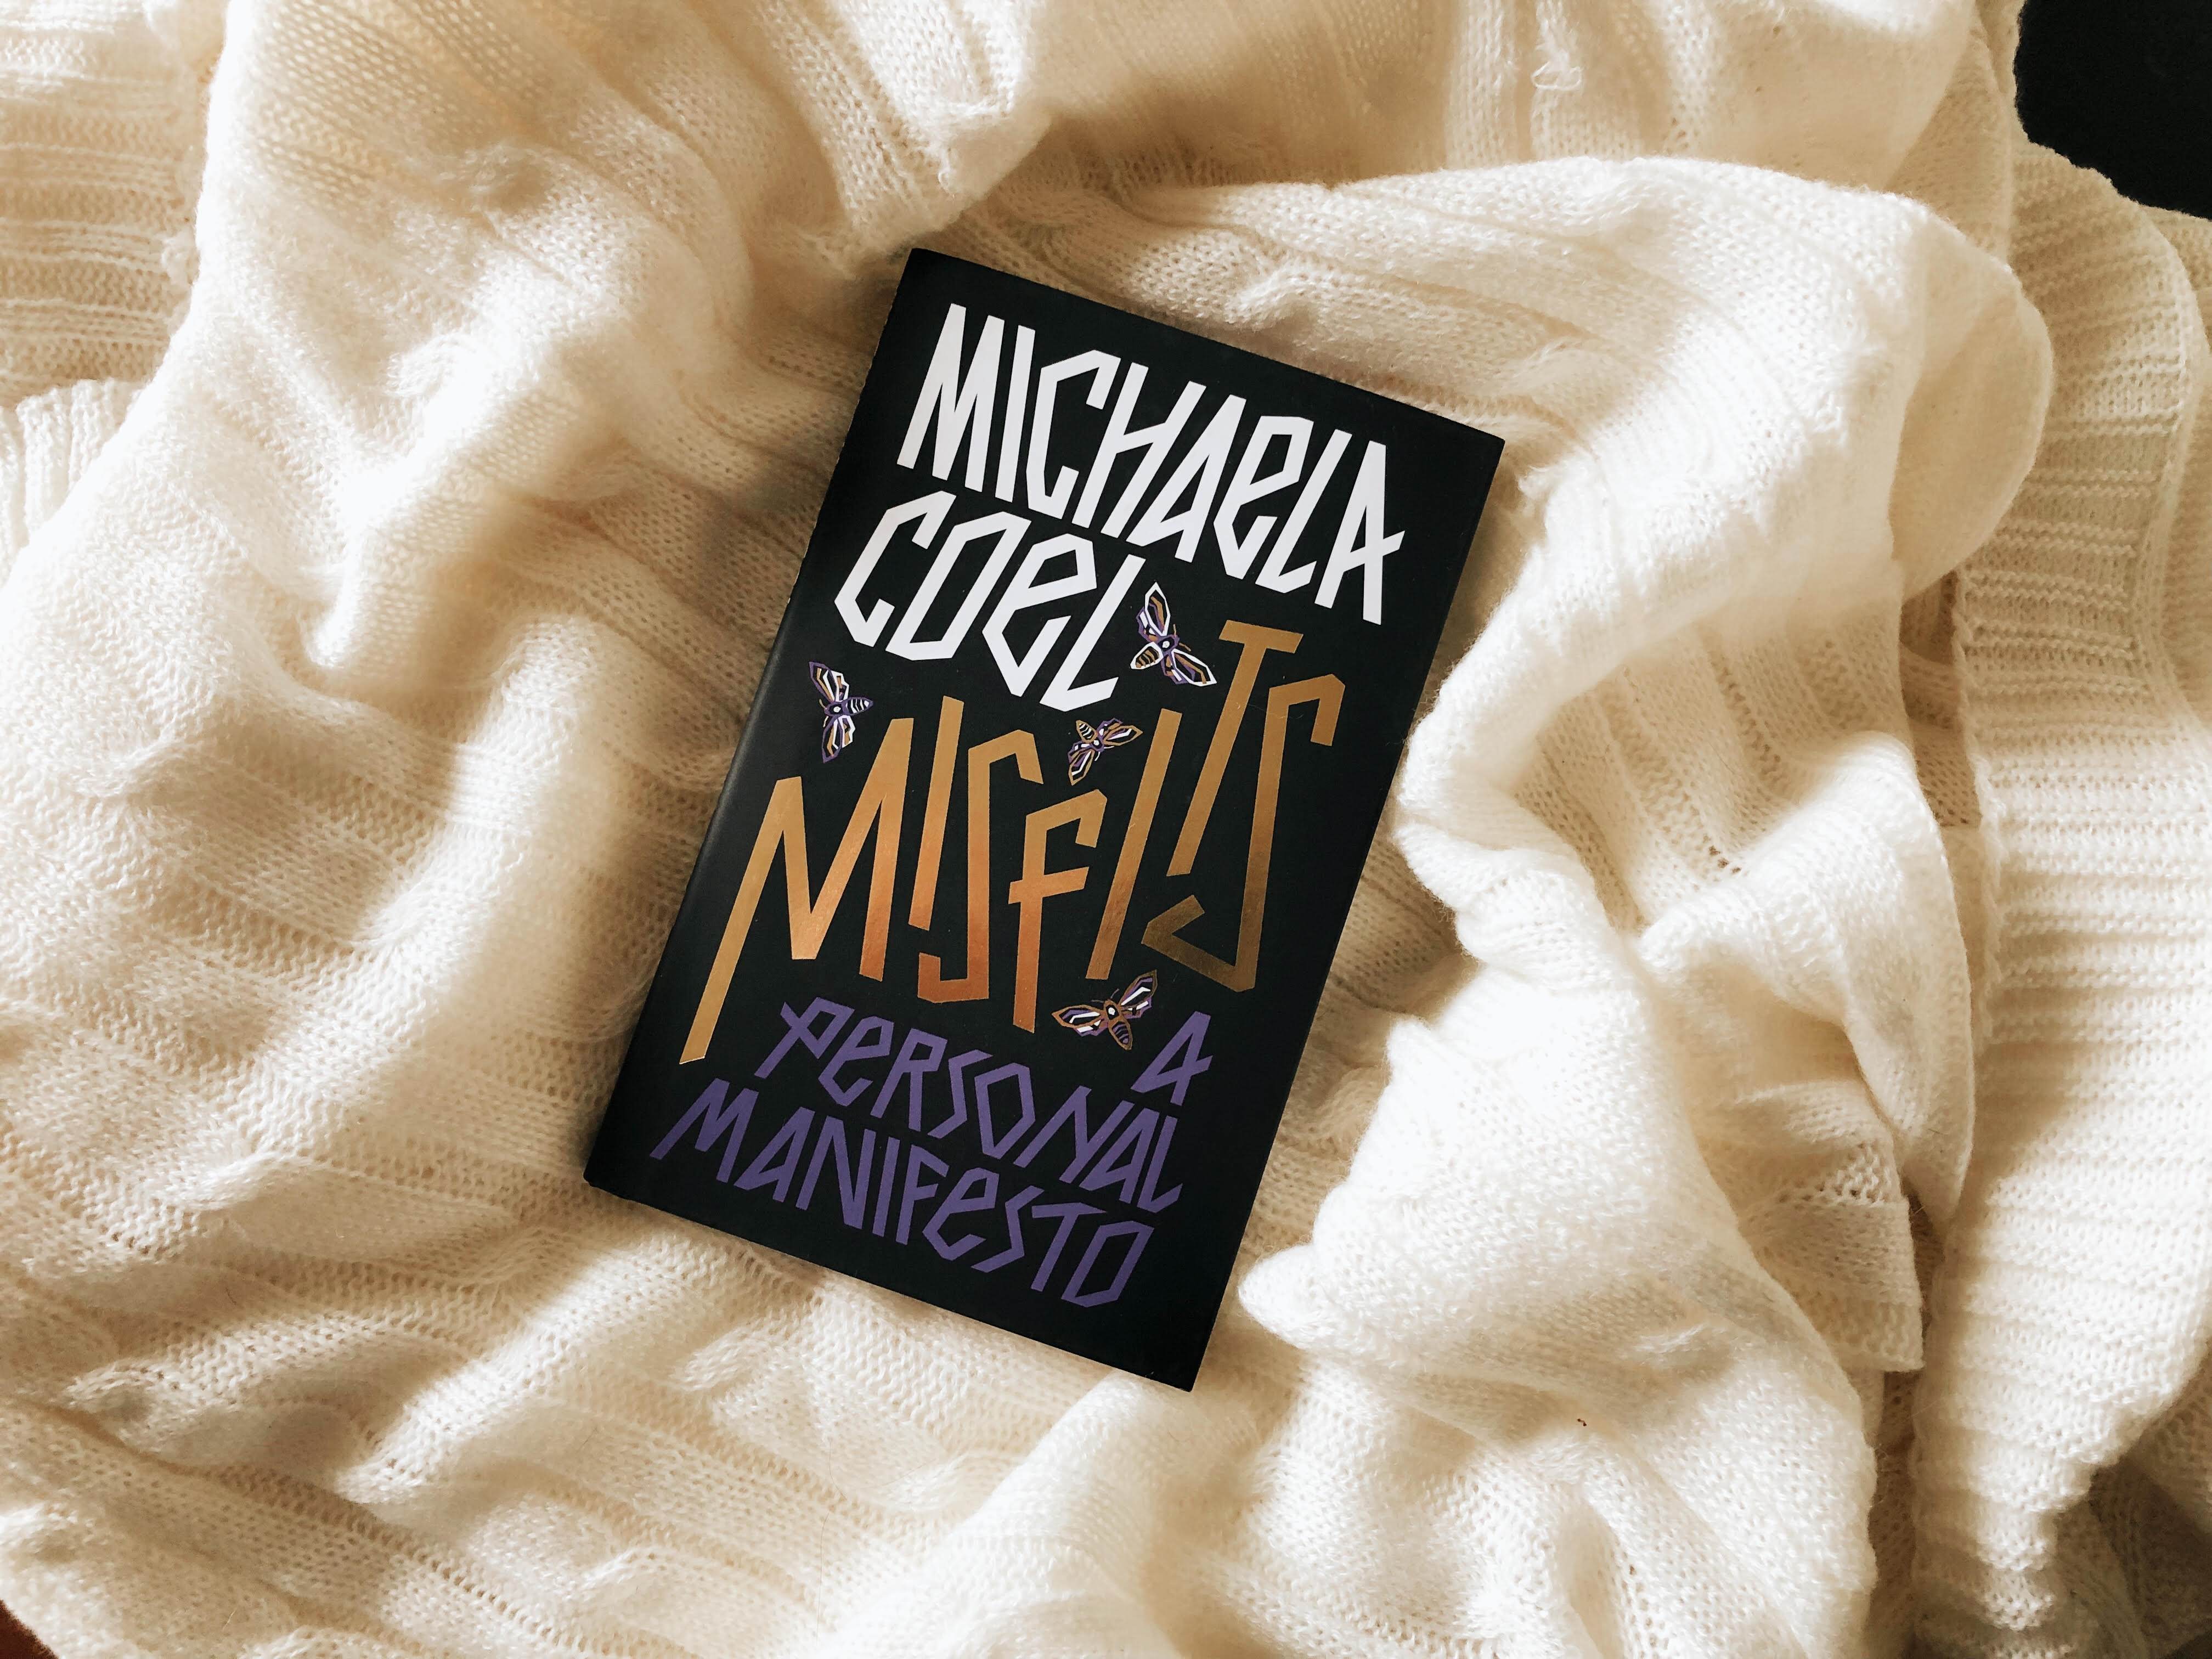 Foto do livro "Misfits: A Personal Manifesto" de Michaela Coel. A capa tem um fundo preto e o título ocupa quase toda a capa.